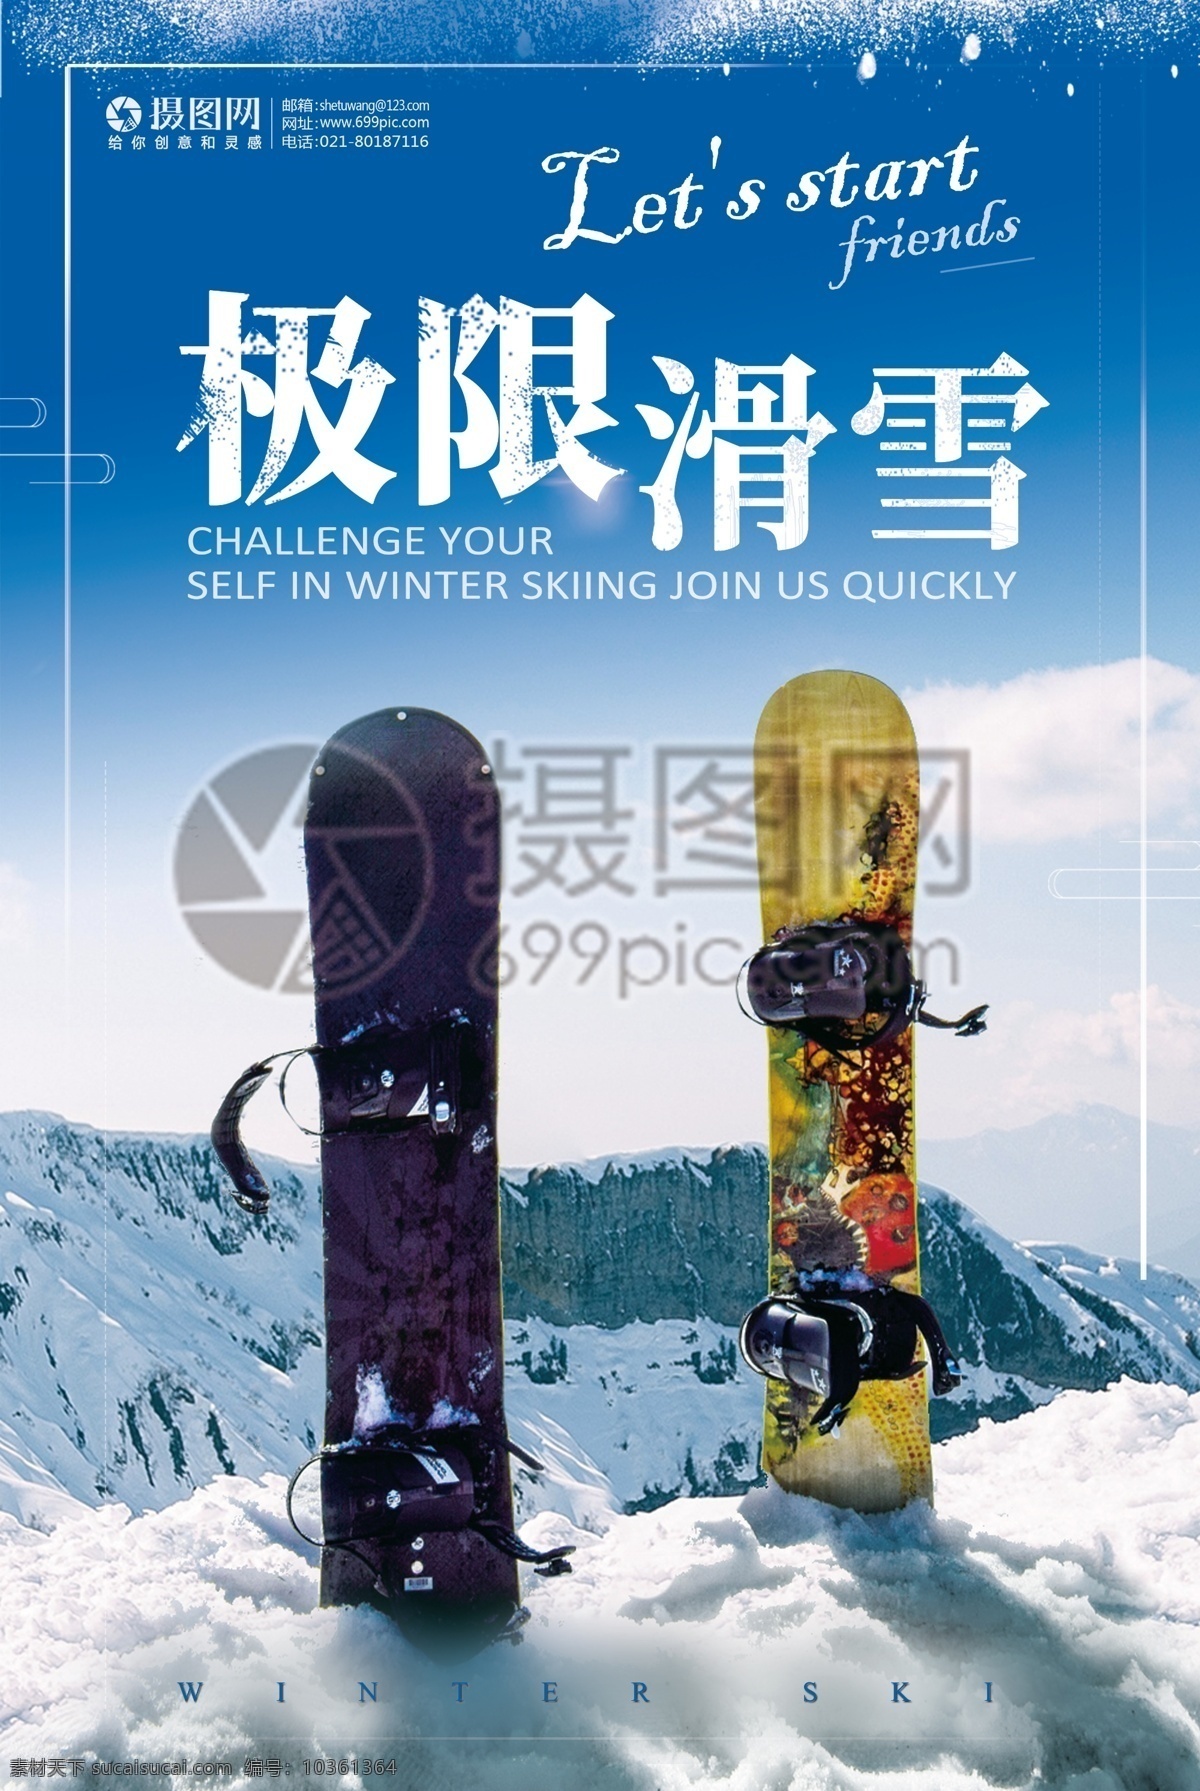 极限滑雪海报 滑雪 海报 滑雪海报 滑雪海报设计 滑雪广告设计 简约海报